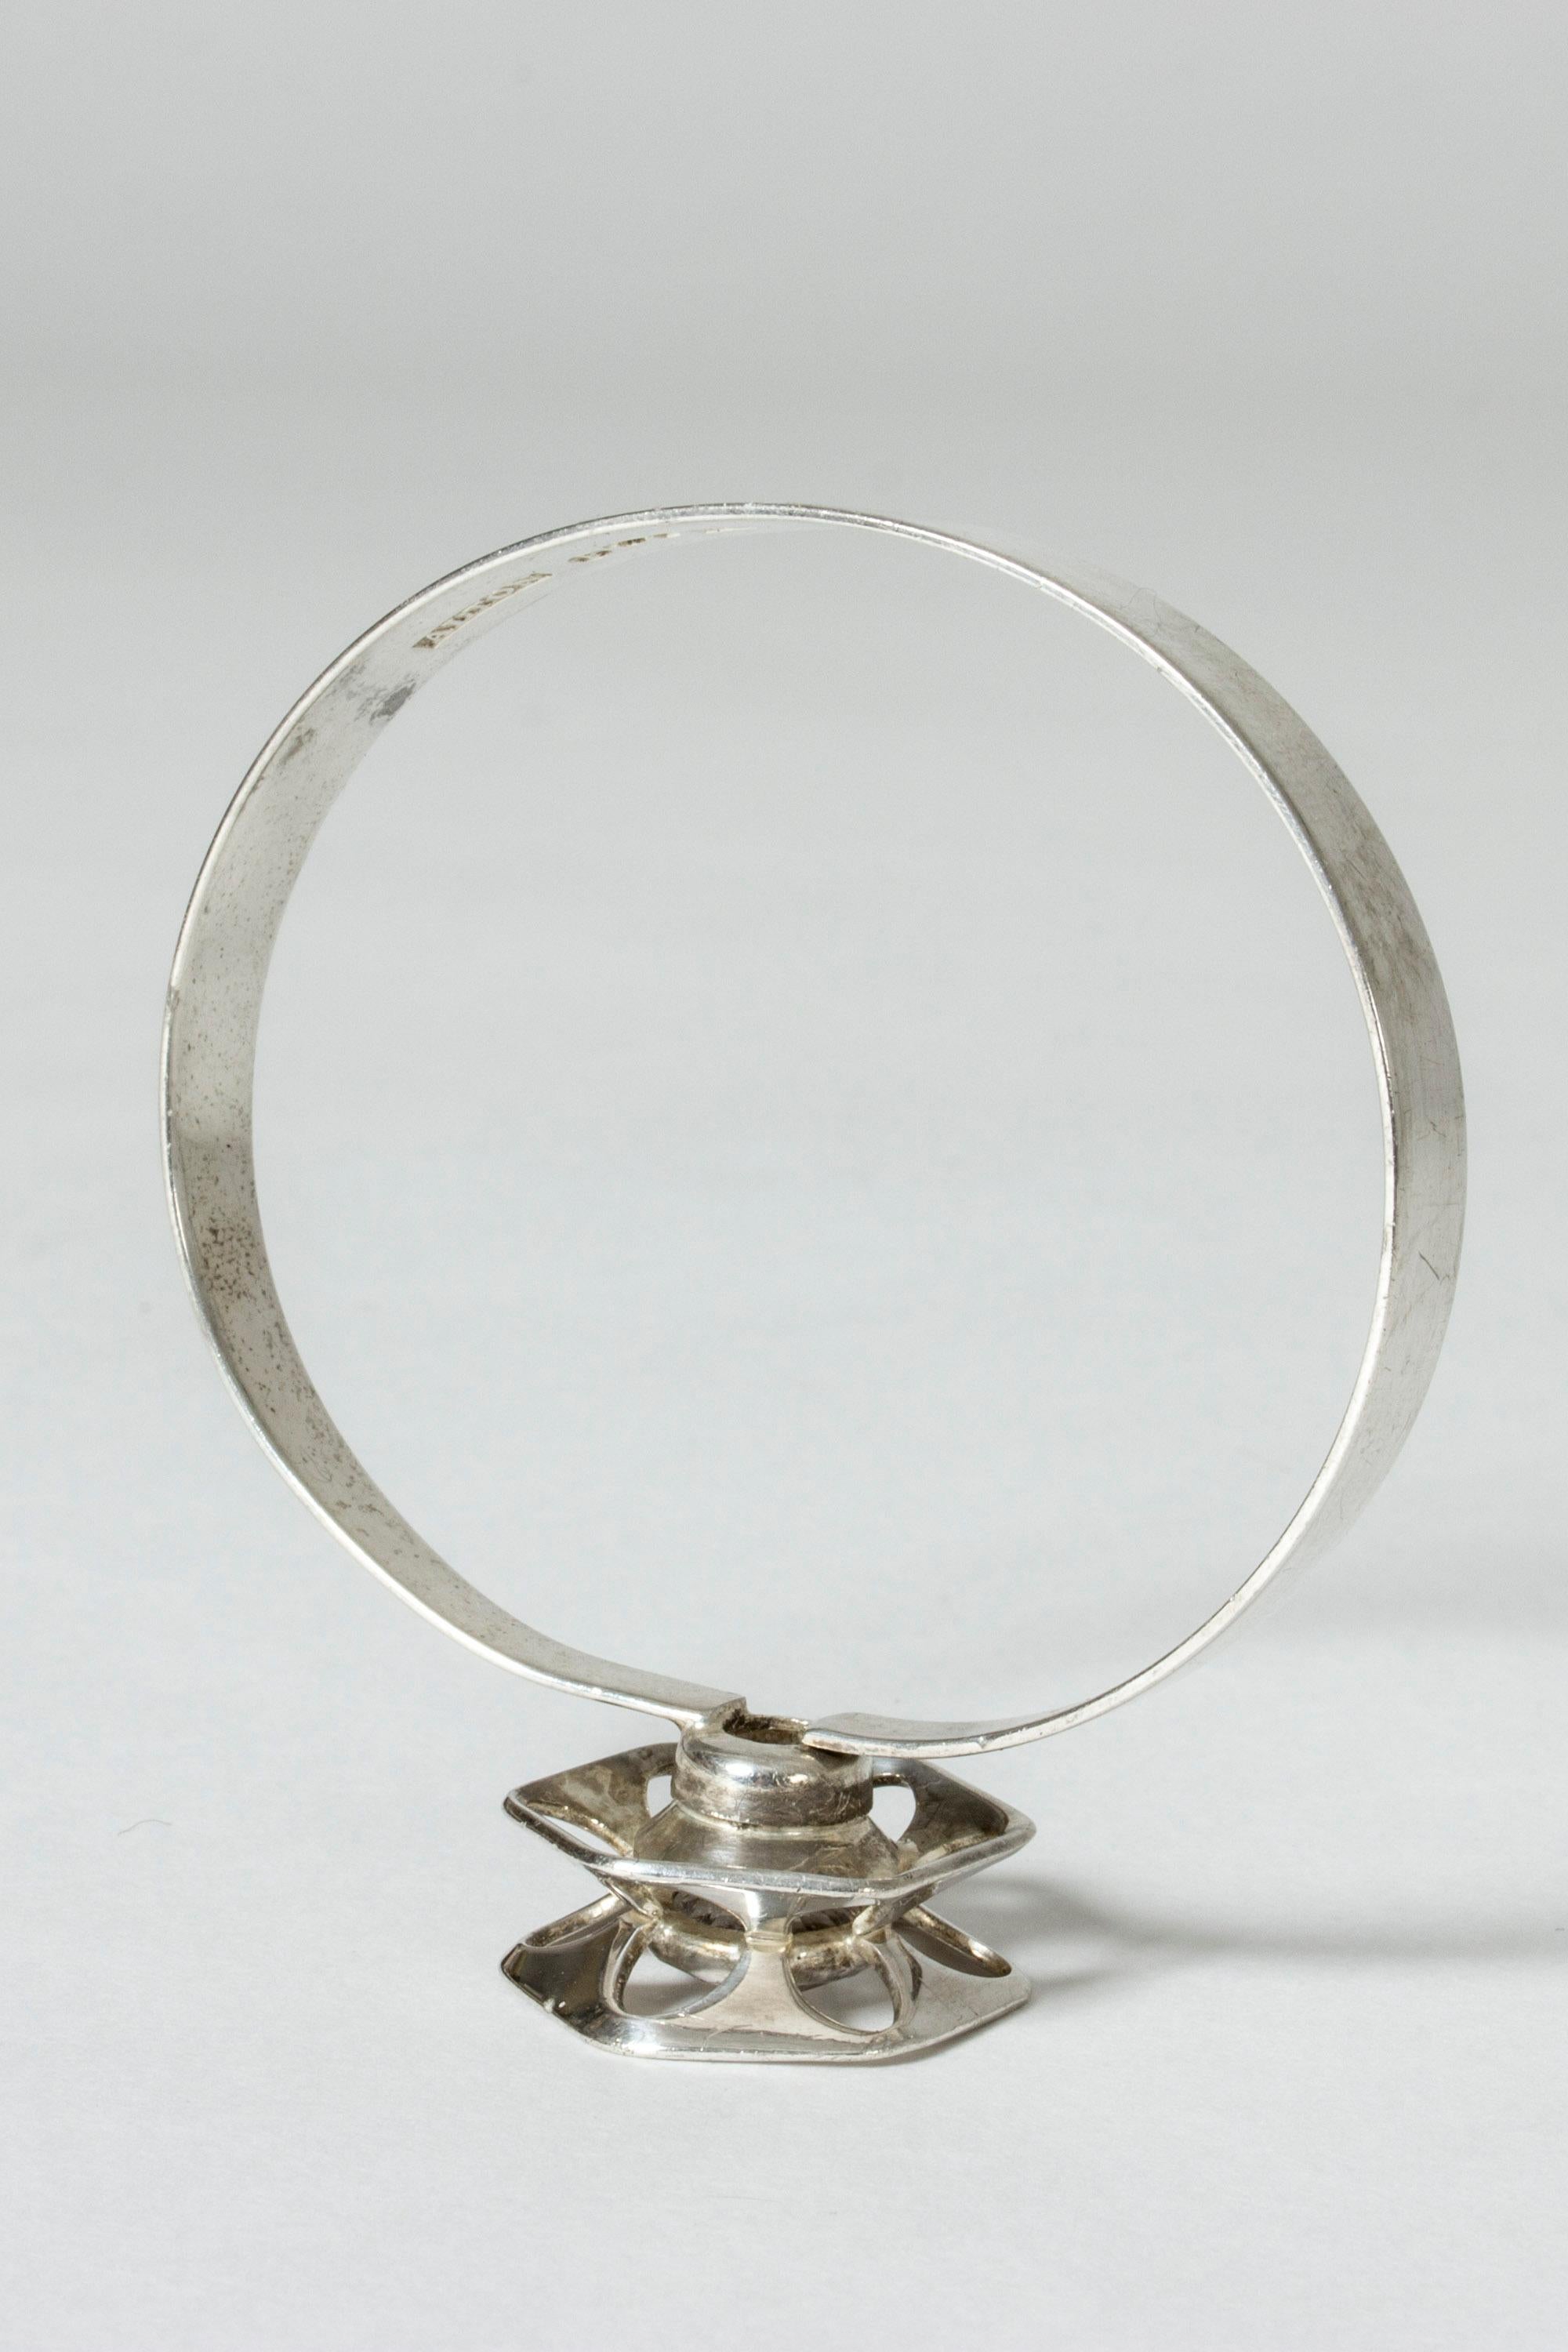 Modernist Silver and Rock Crystal Bracelet by Theresa Hvorslev for Alton, Sweden